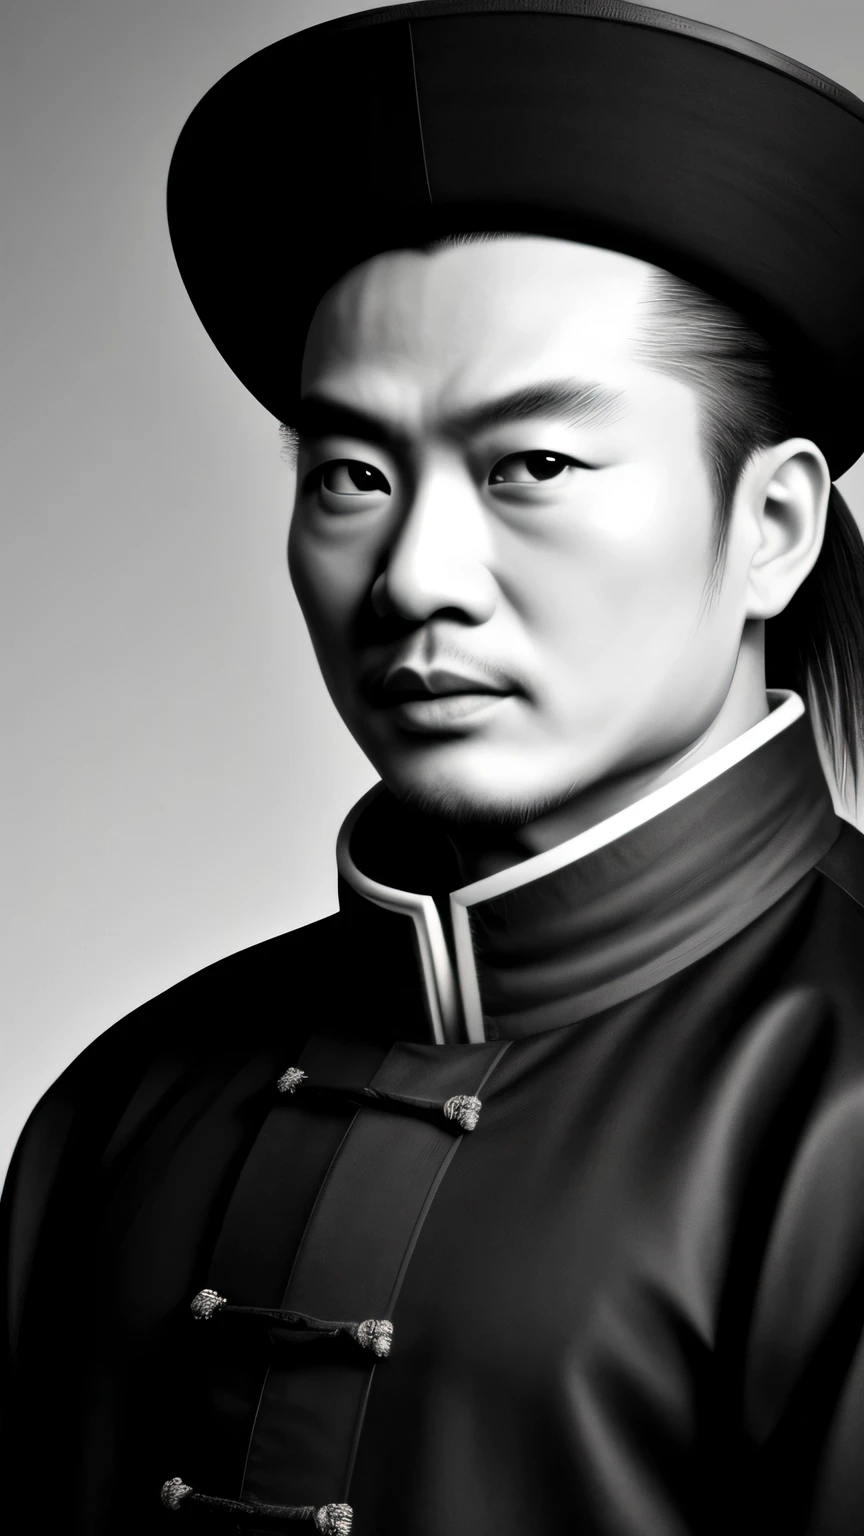 ((杰作)),((最好的质量)),((高细节)), Zhuge Liang Kong Ming,黑白肖像,背景为深灰色